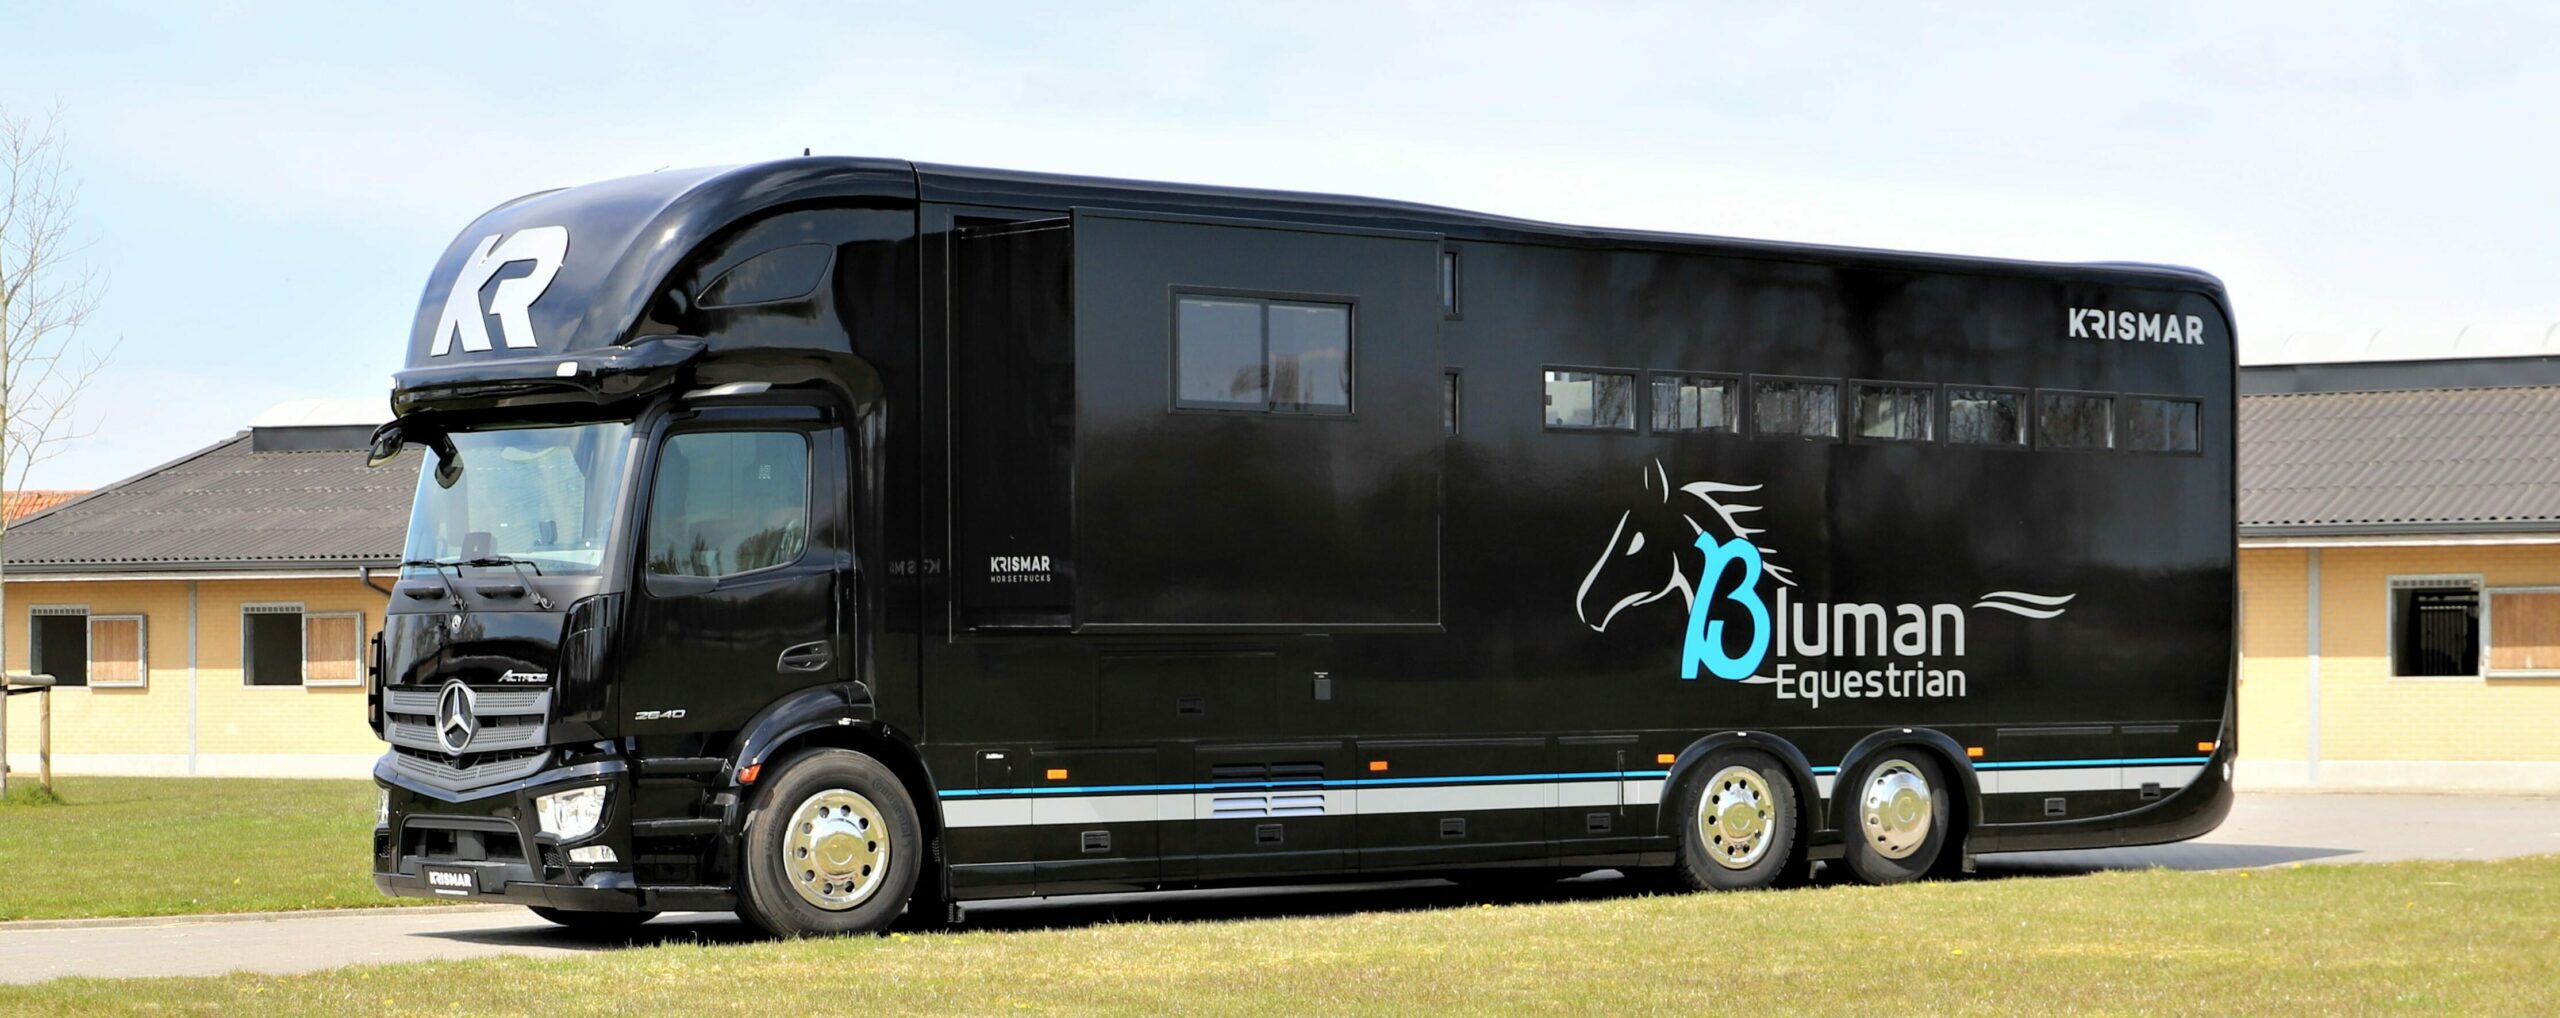 Een zwarte paardenvrachtwagen met logo van Bluman Equestrian